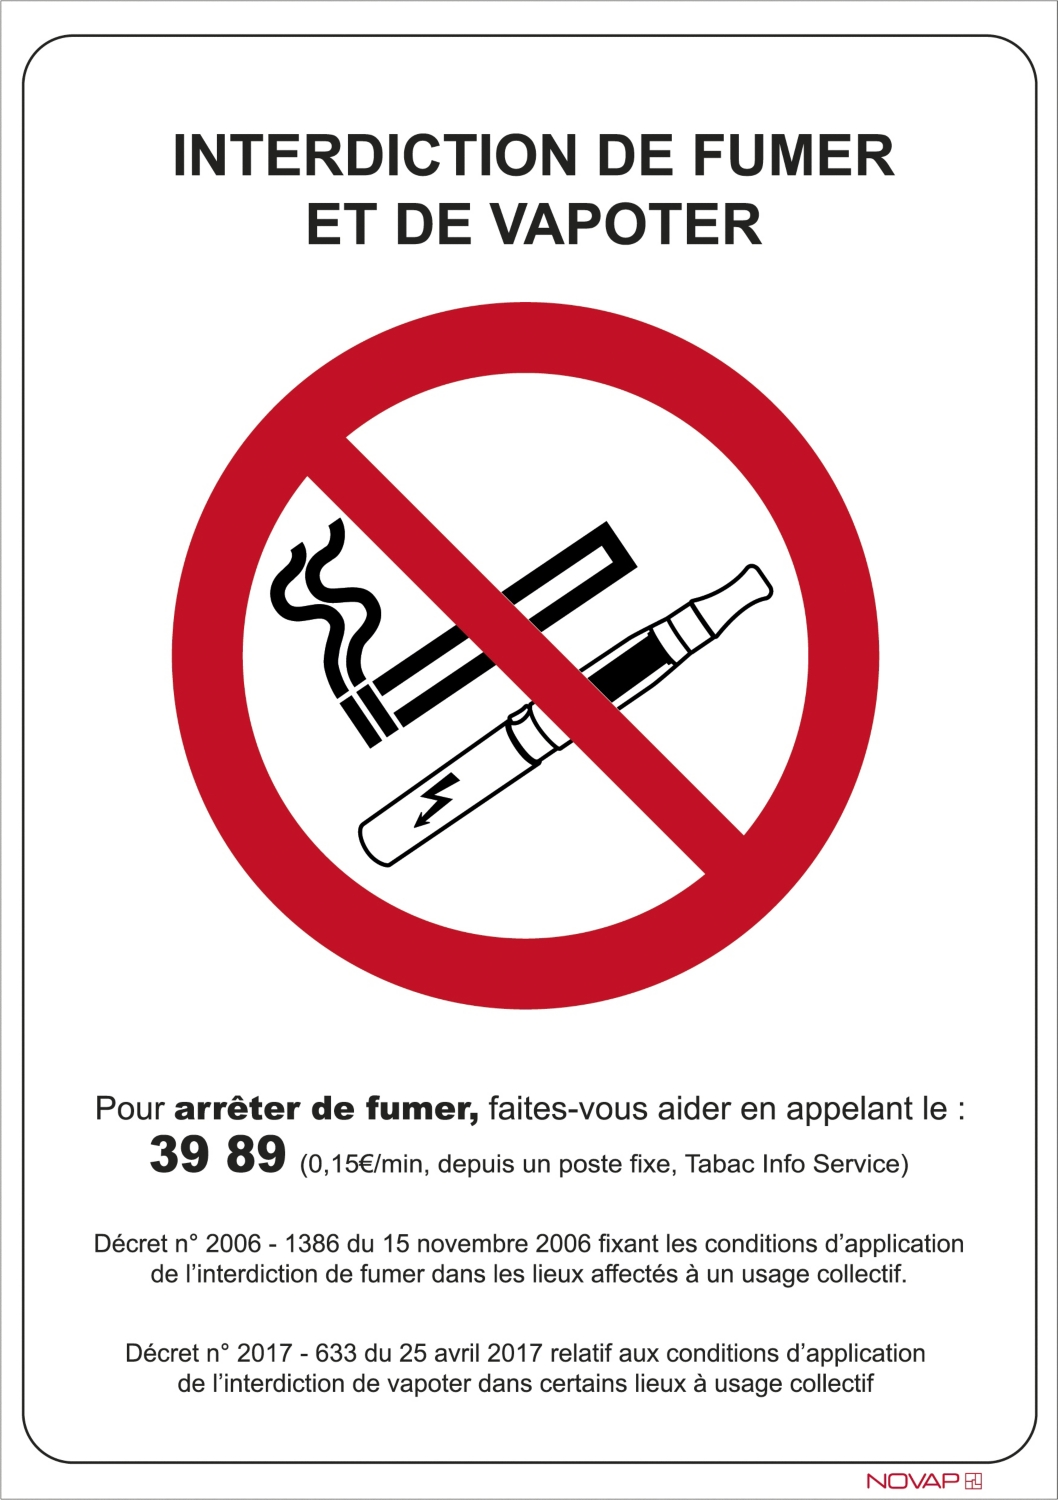  Panneau interdiction de fumer et de vapoter 